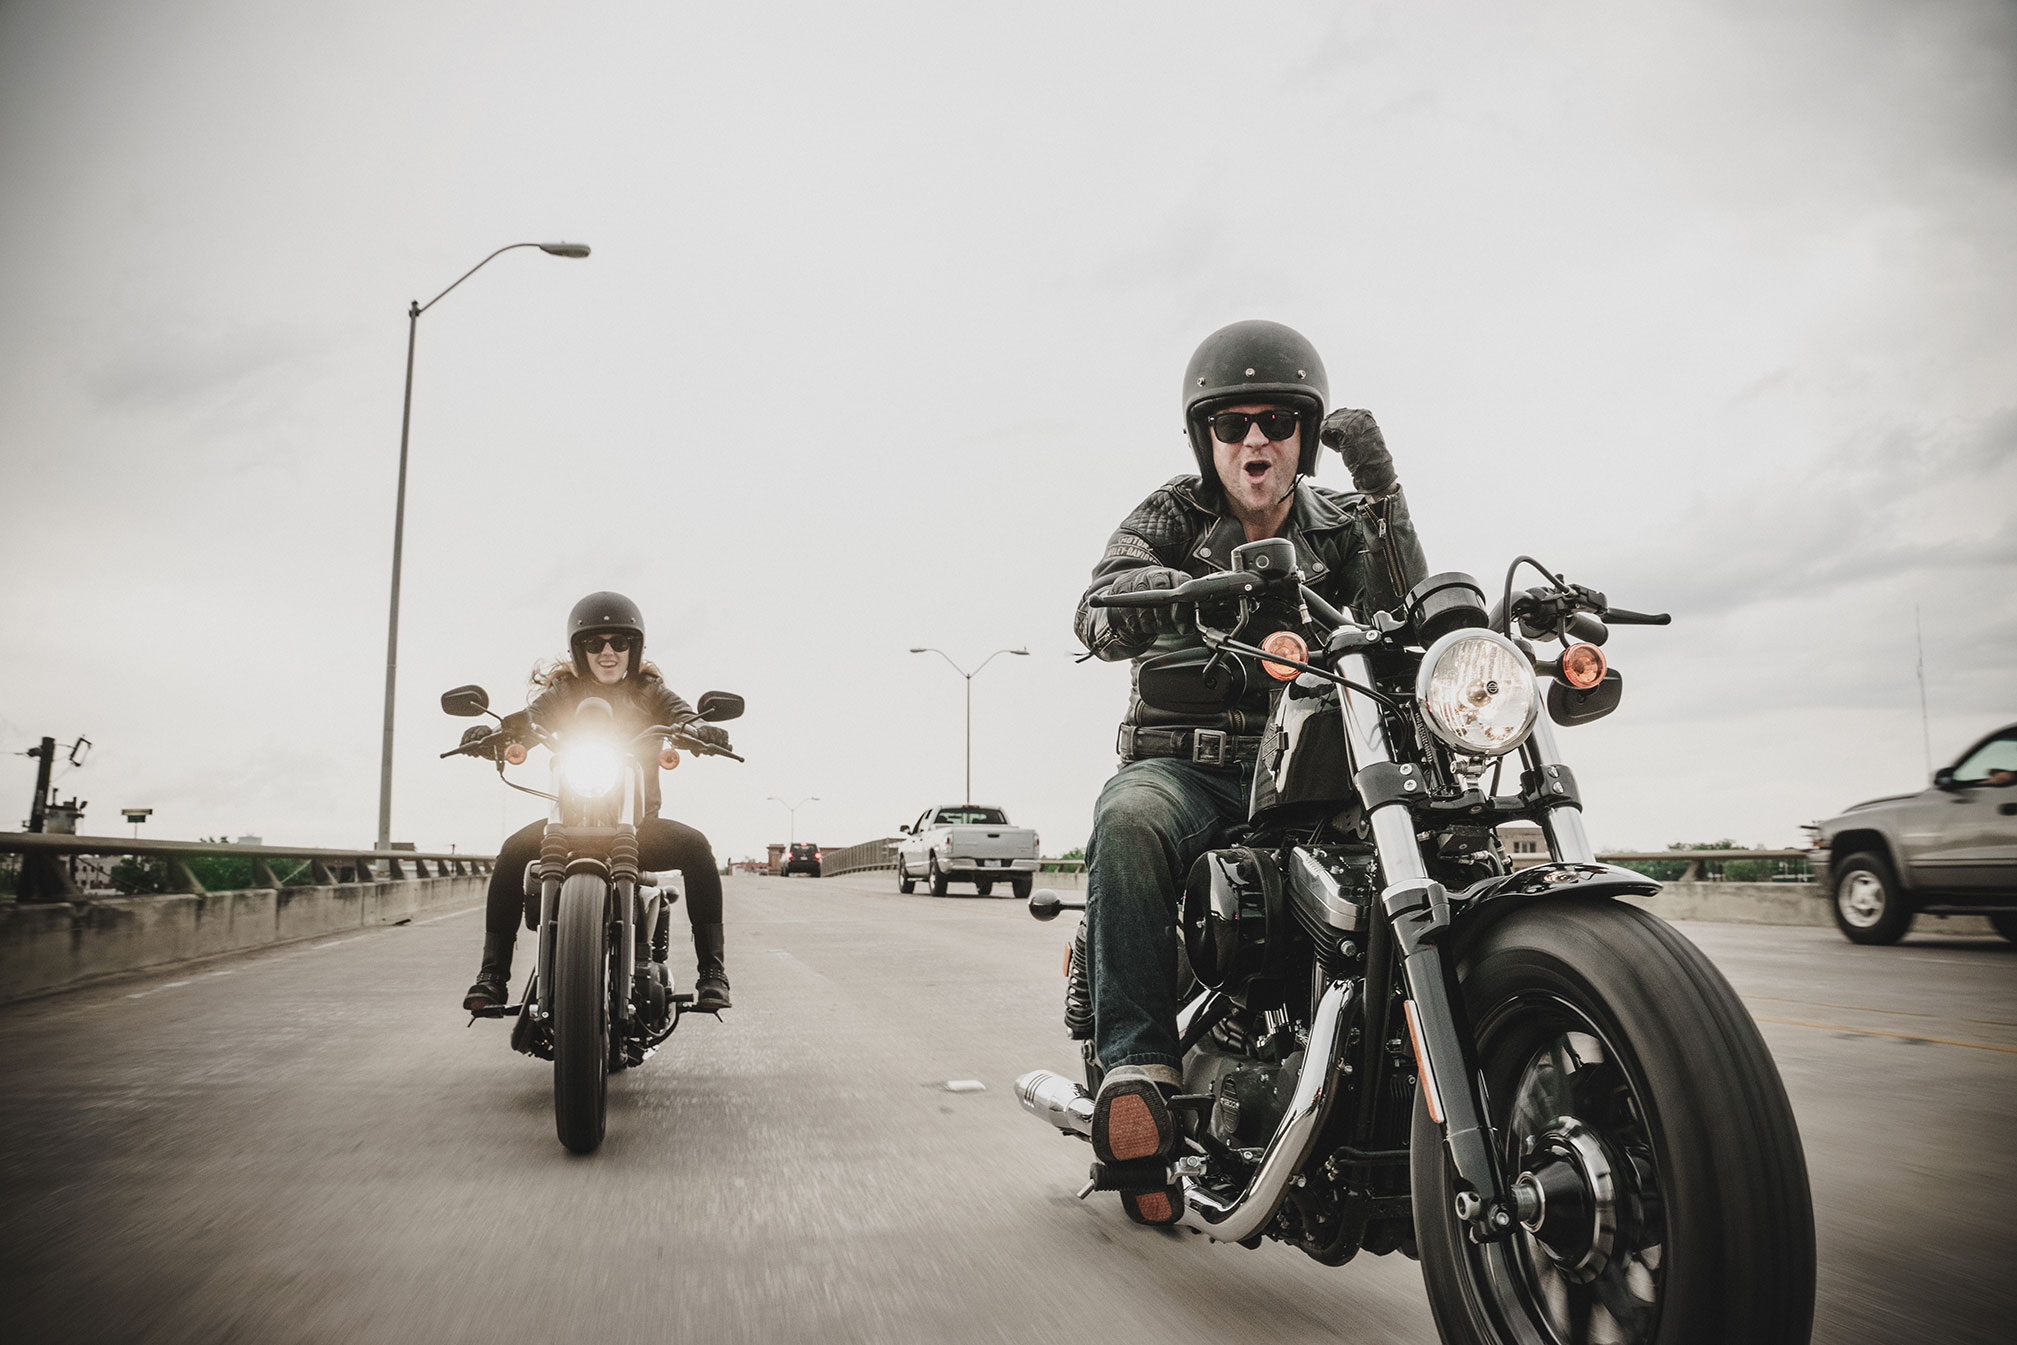 Harley Davidson Sportster Wallpapers | BadAssHelmetStore